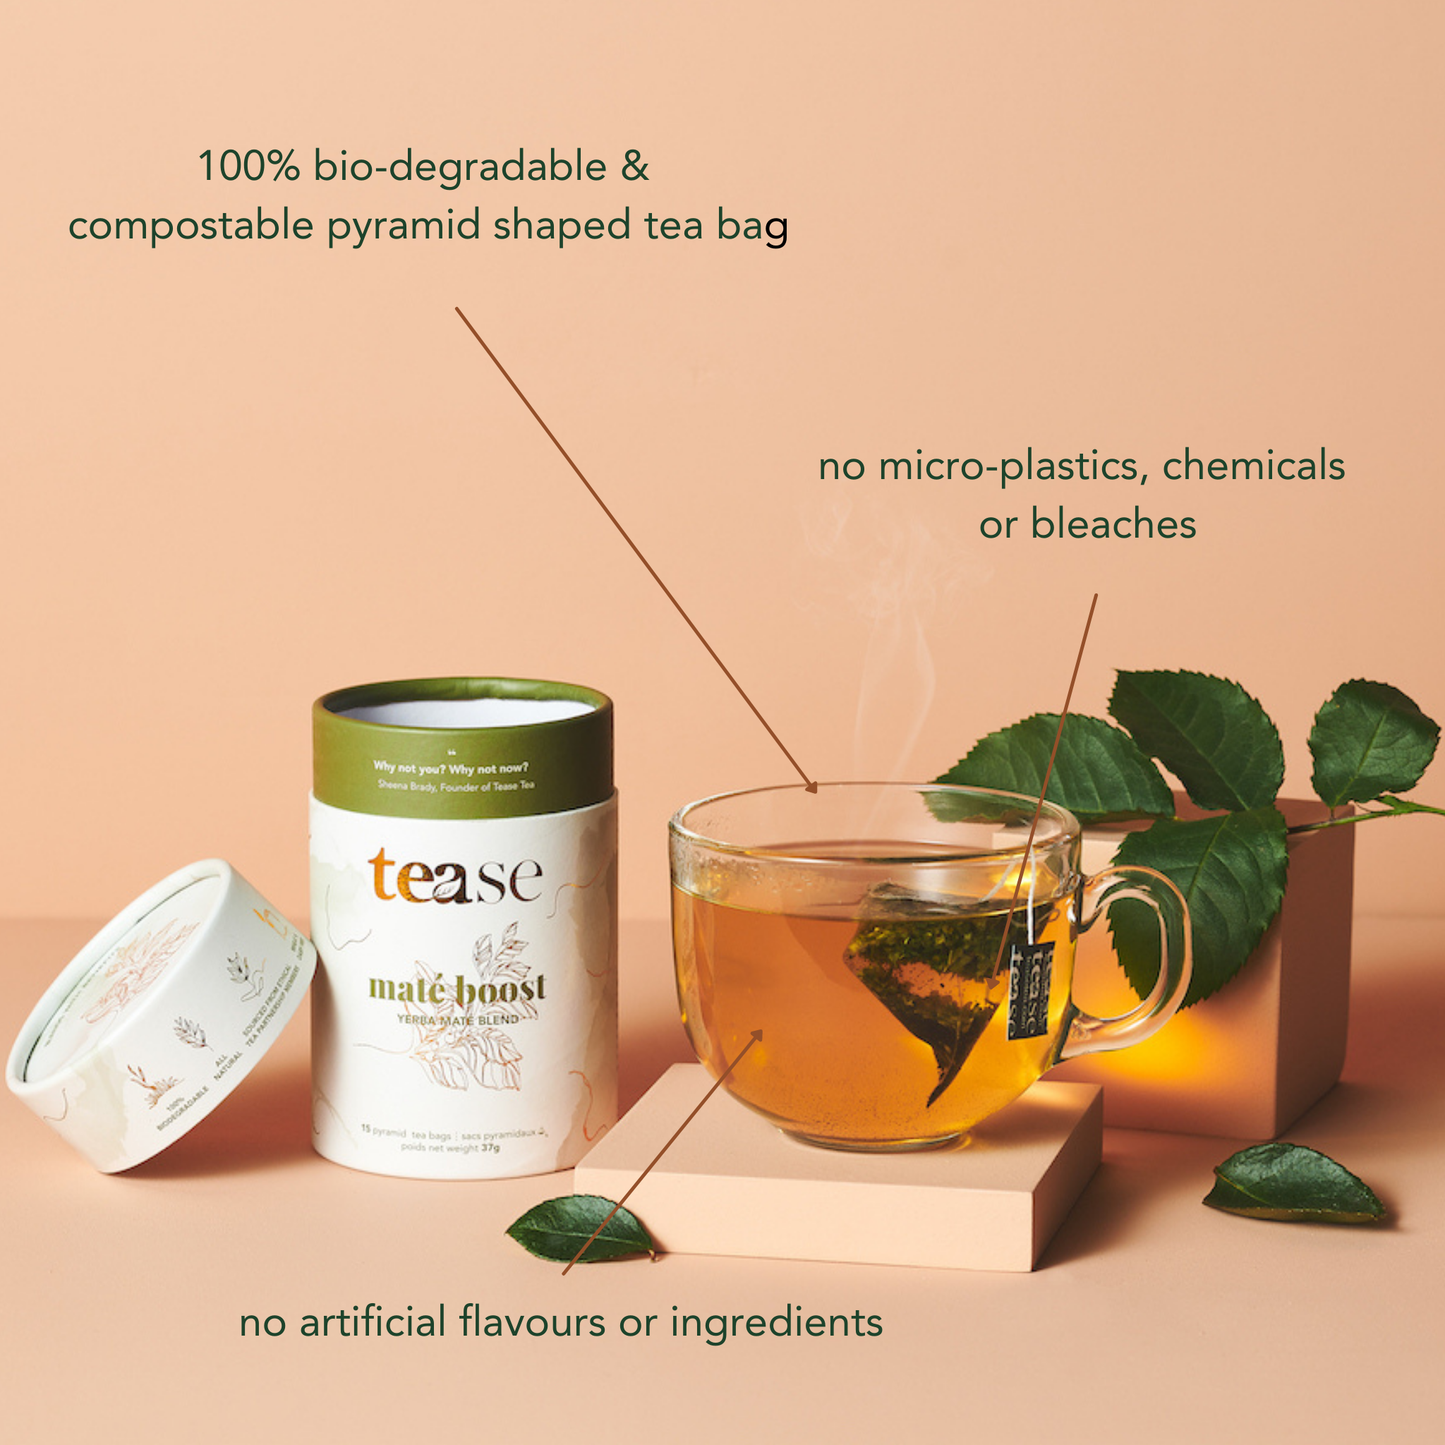 Tease | Wellness Tea Blends + Accessories - Chill Out Cherry Ashwagandha Mushroom Adaptogen Tea Blend